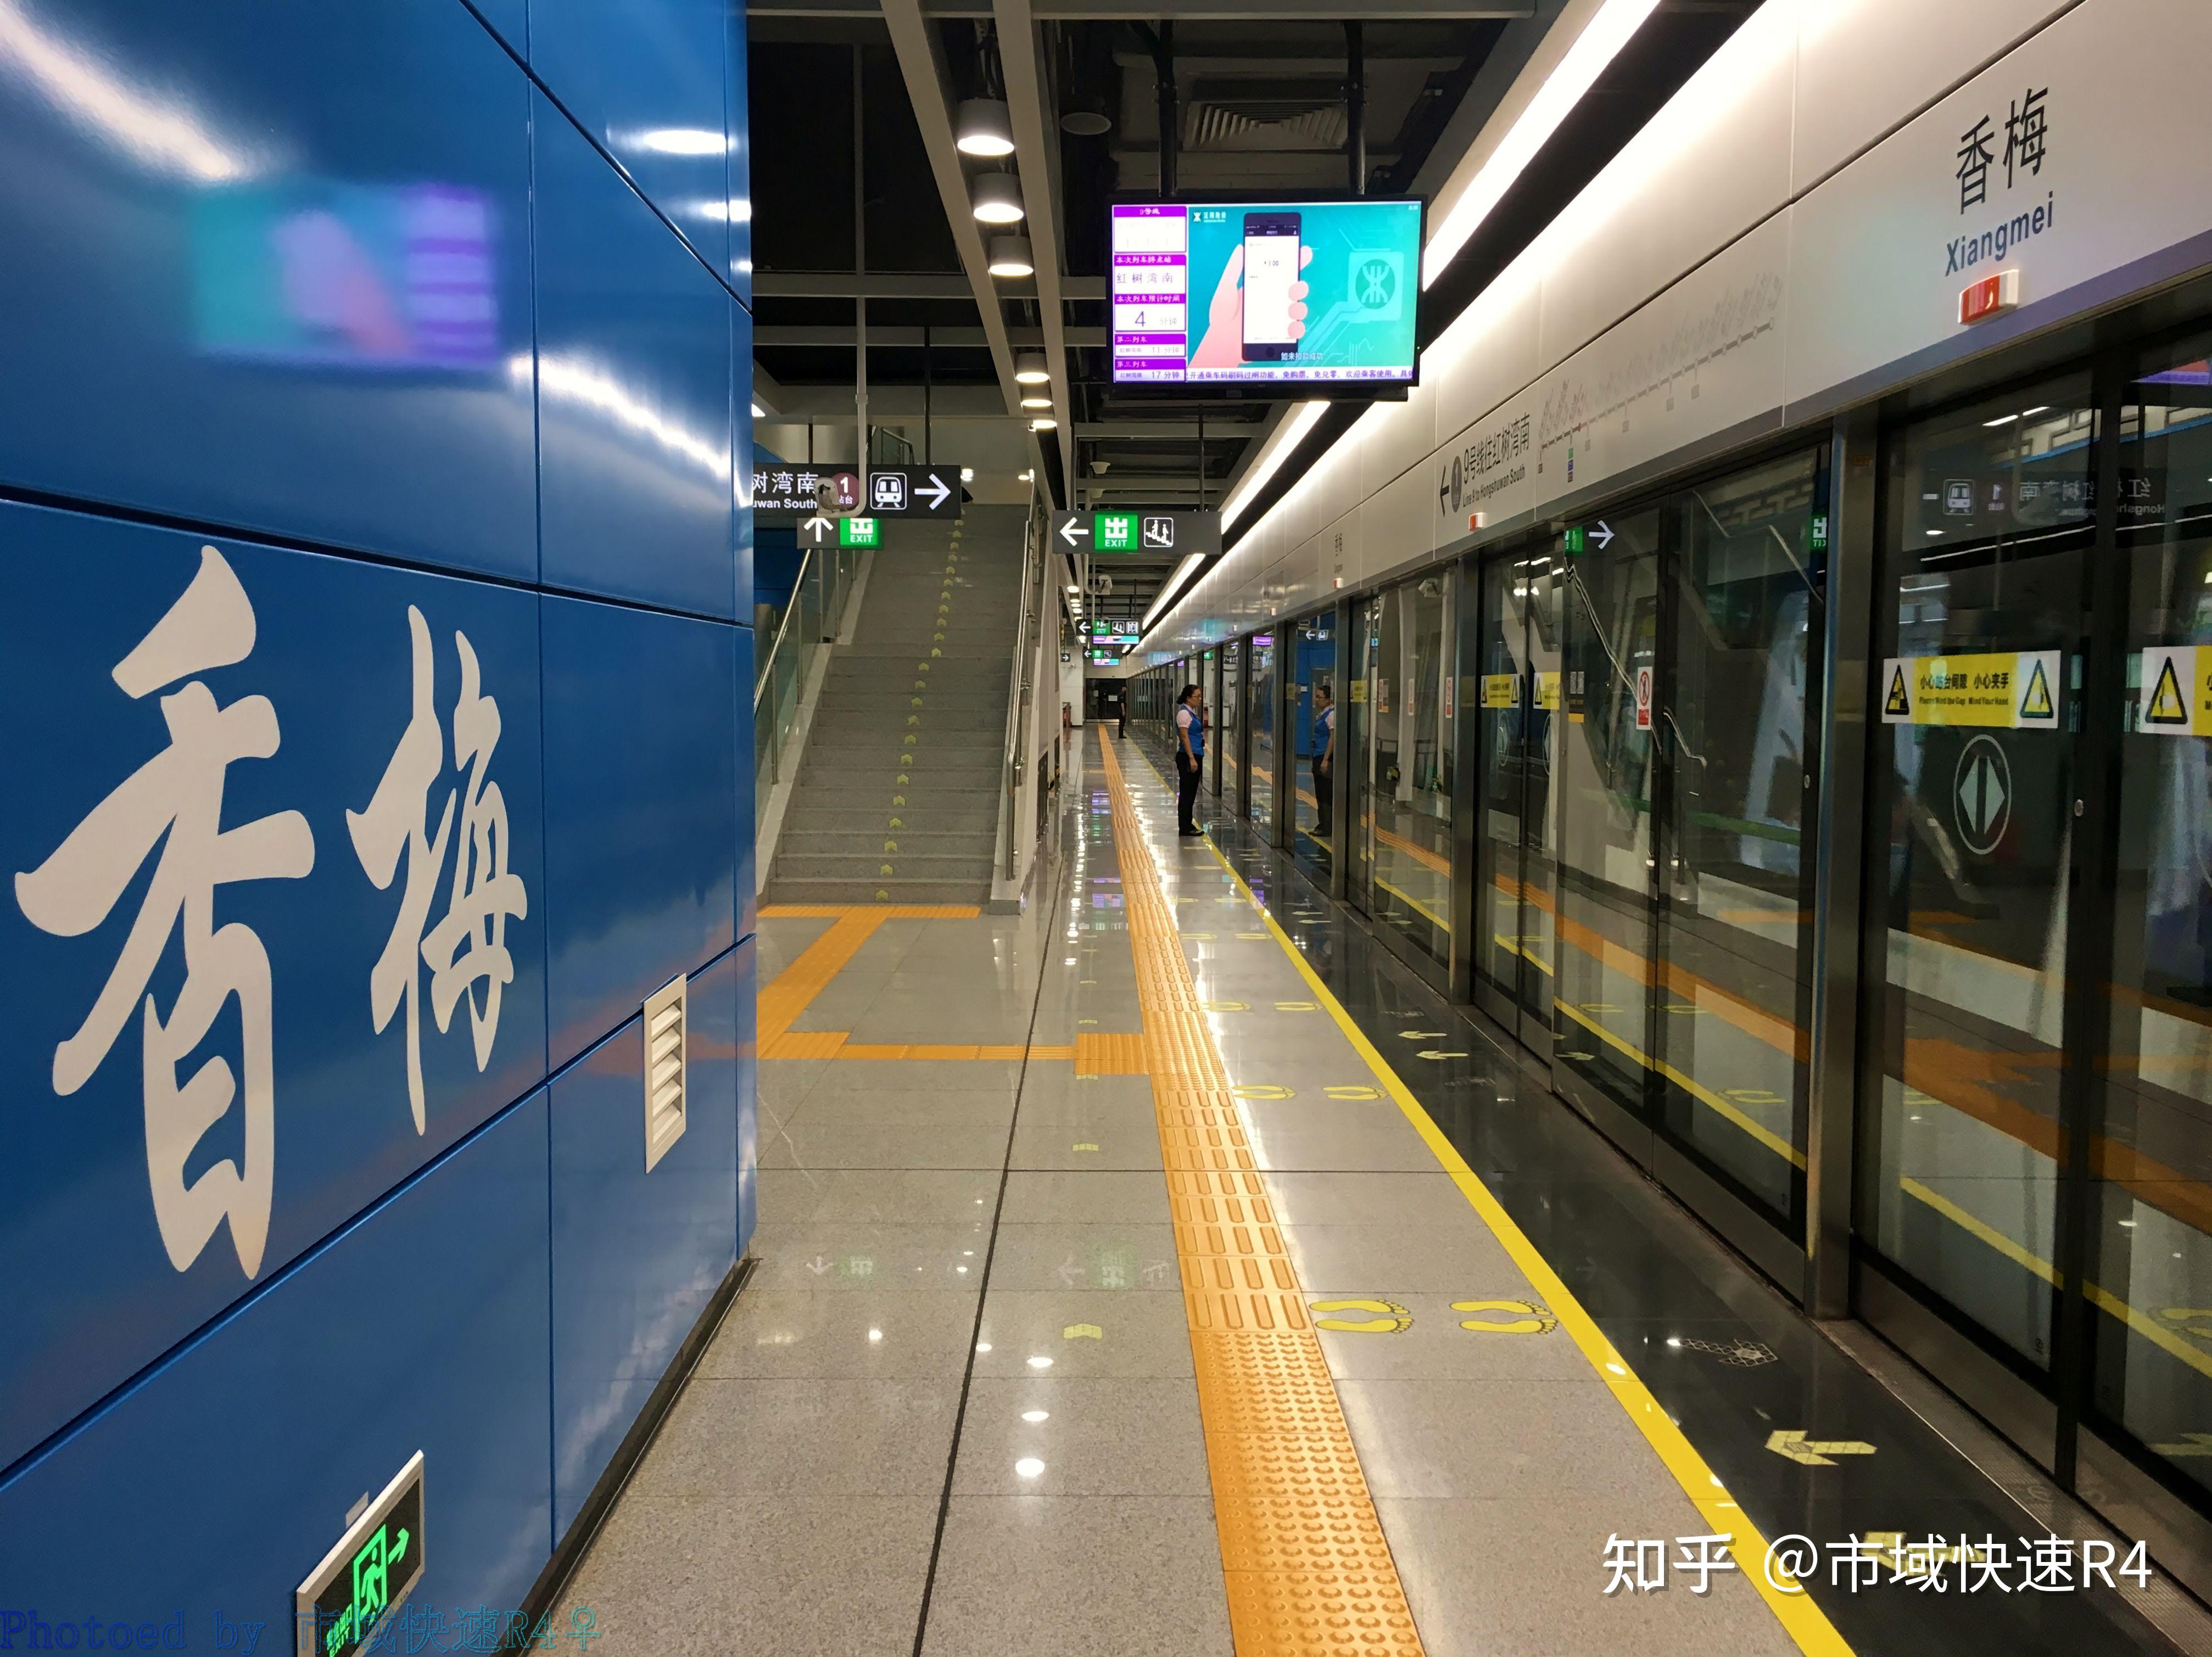 香梅路口,地下二层岛式车站xiangmei station17,香梅站景田站站厅层,2